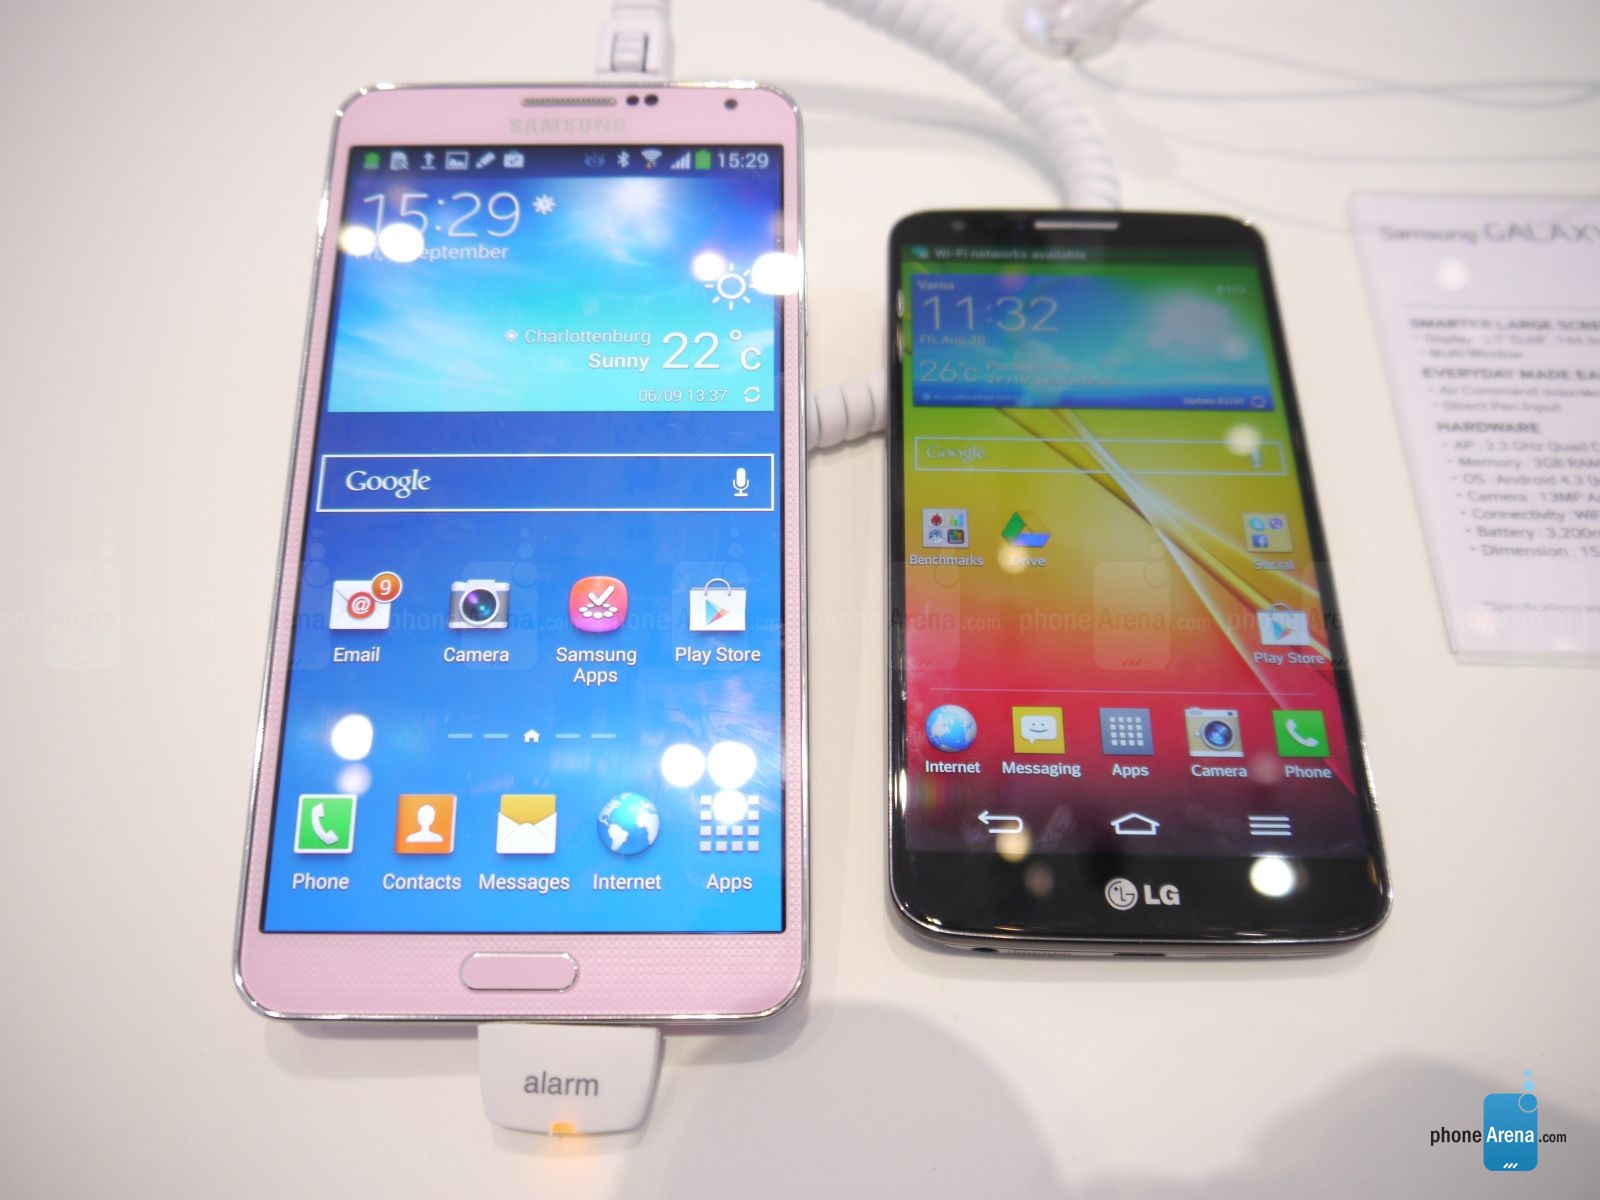  Samsung Galaxy S4 mü LG G2 mi?